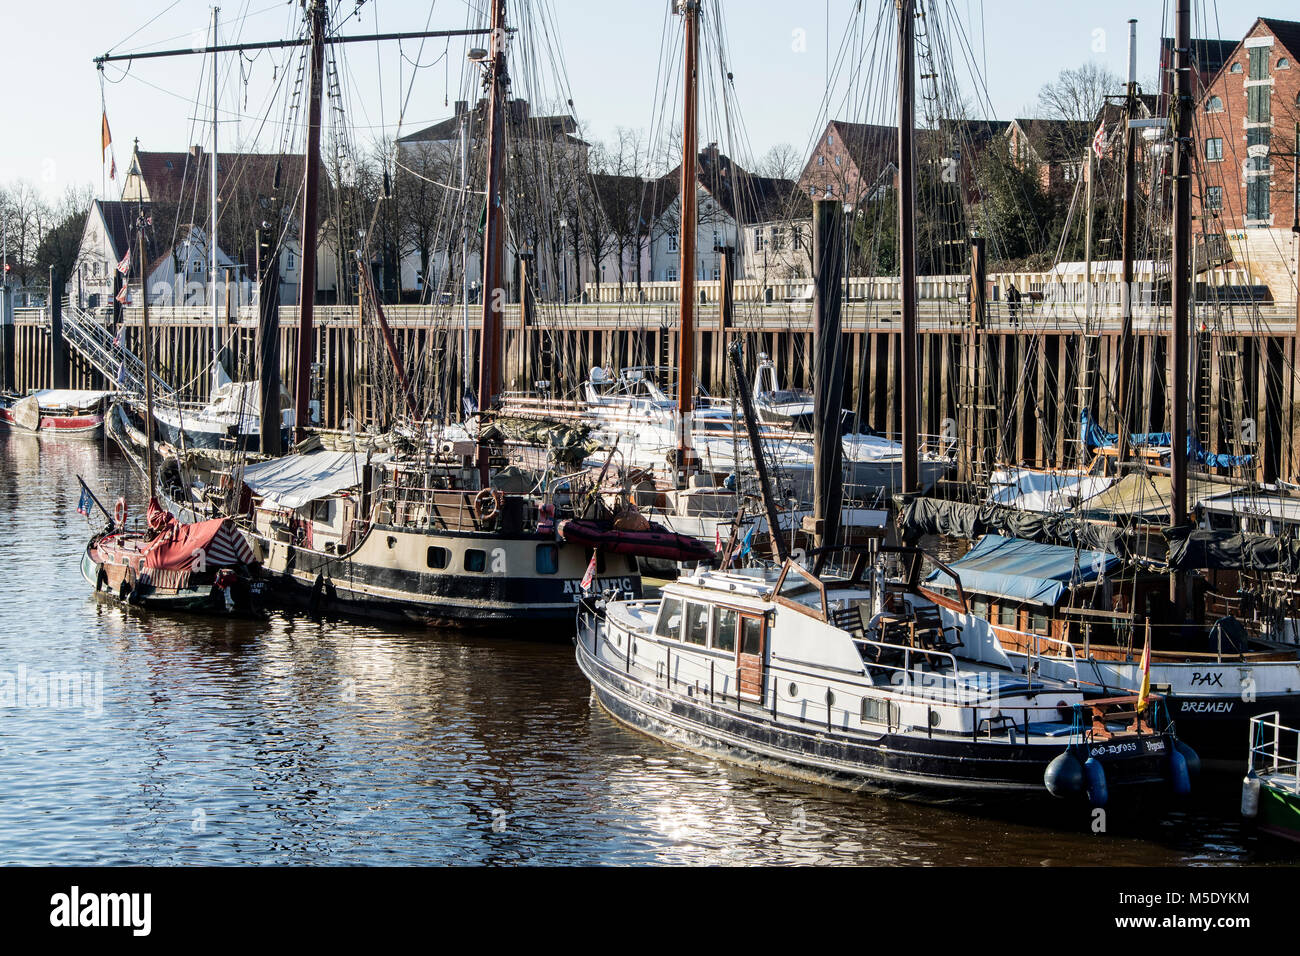 Yachthafen in Bremen-Vegesack mit zum Teil historischen Segelbooten Stock Photo